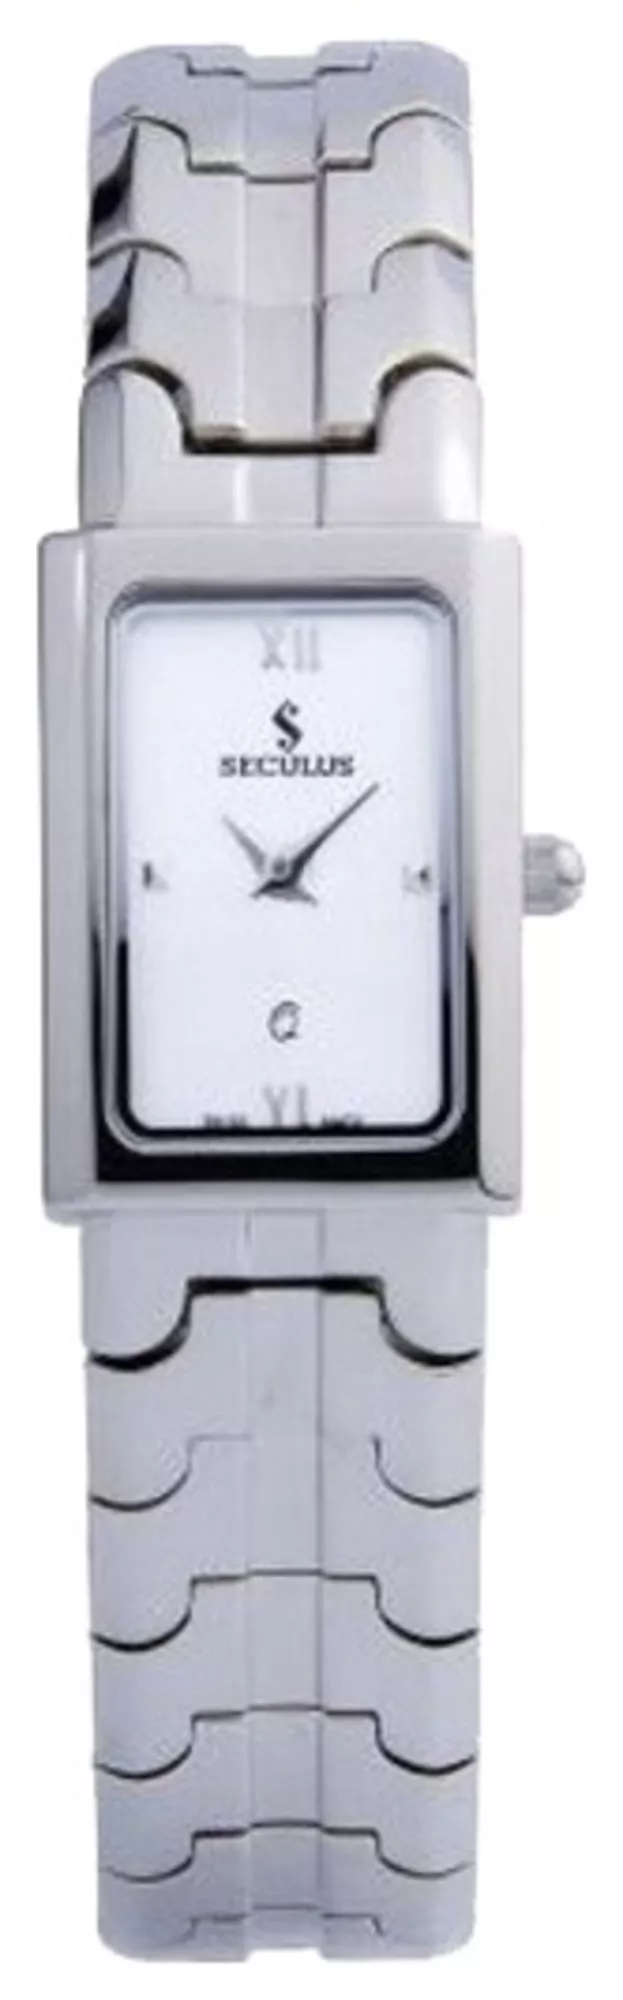 Часы Seculus 1501.1.751 silver